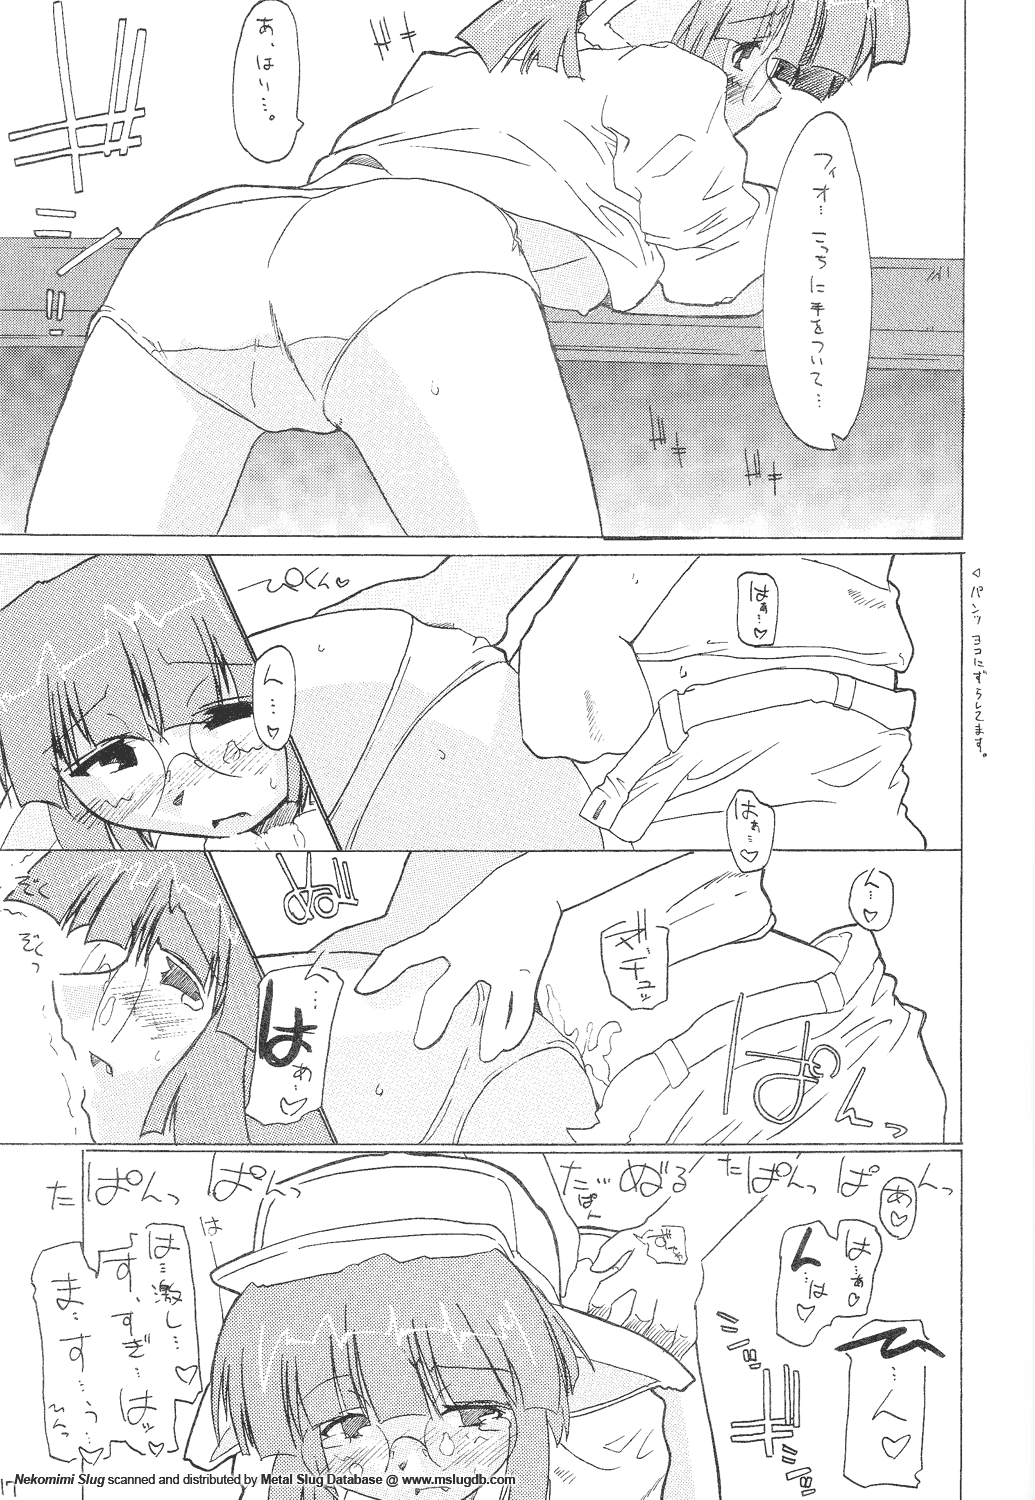 [GEWALT (EXCEL)] Nekomimi Slug (Metal Slug) page 17 full